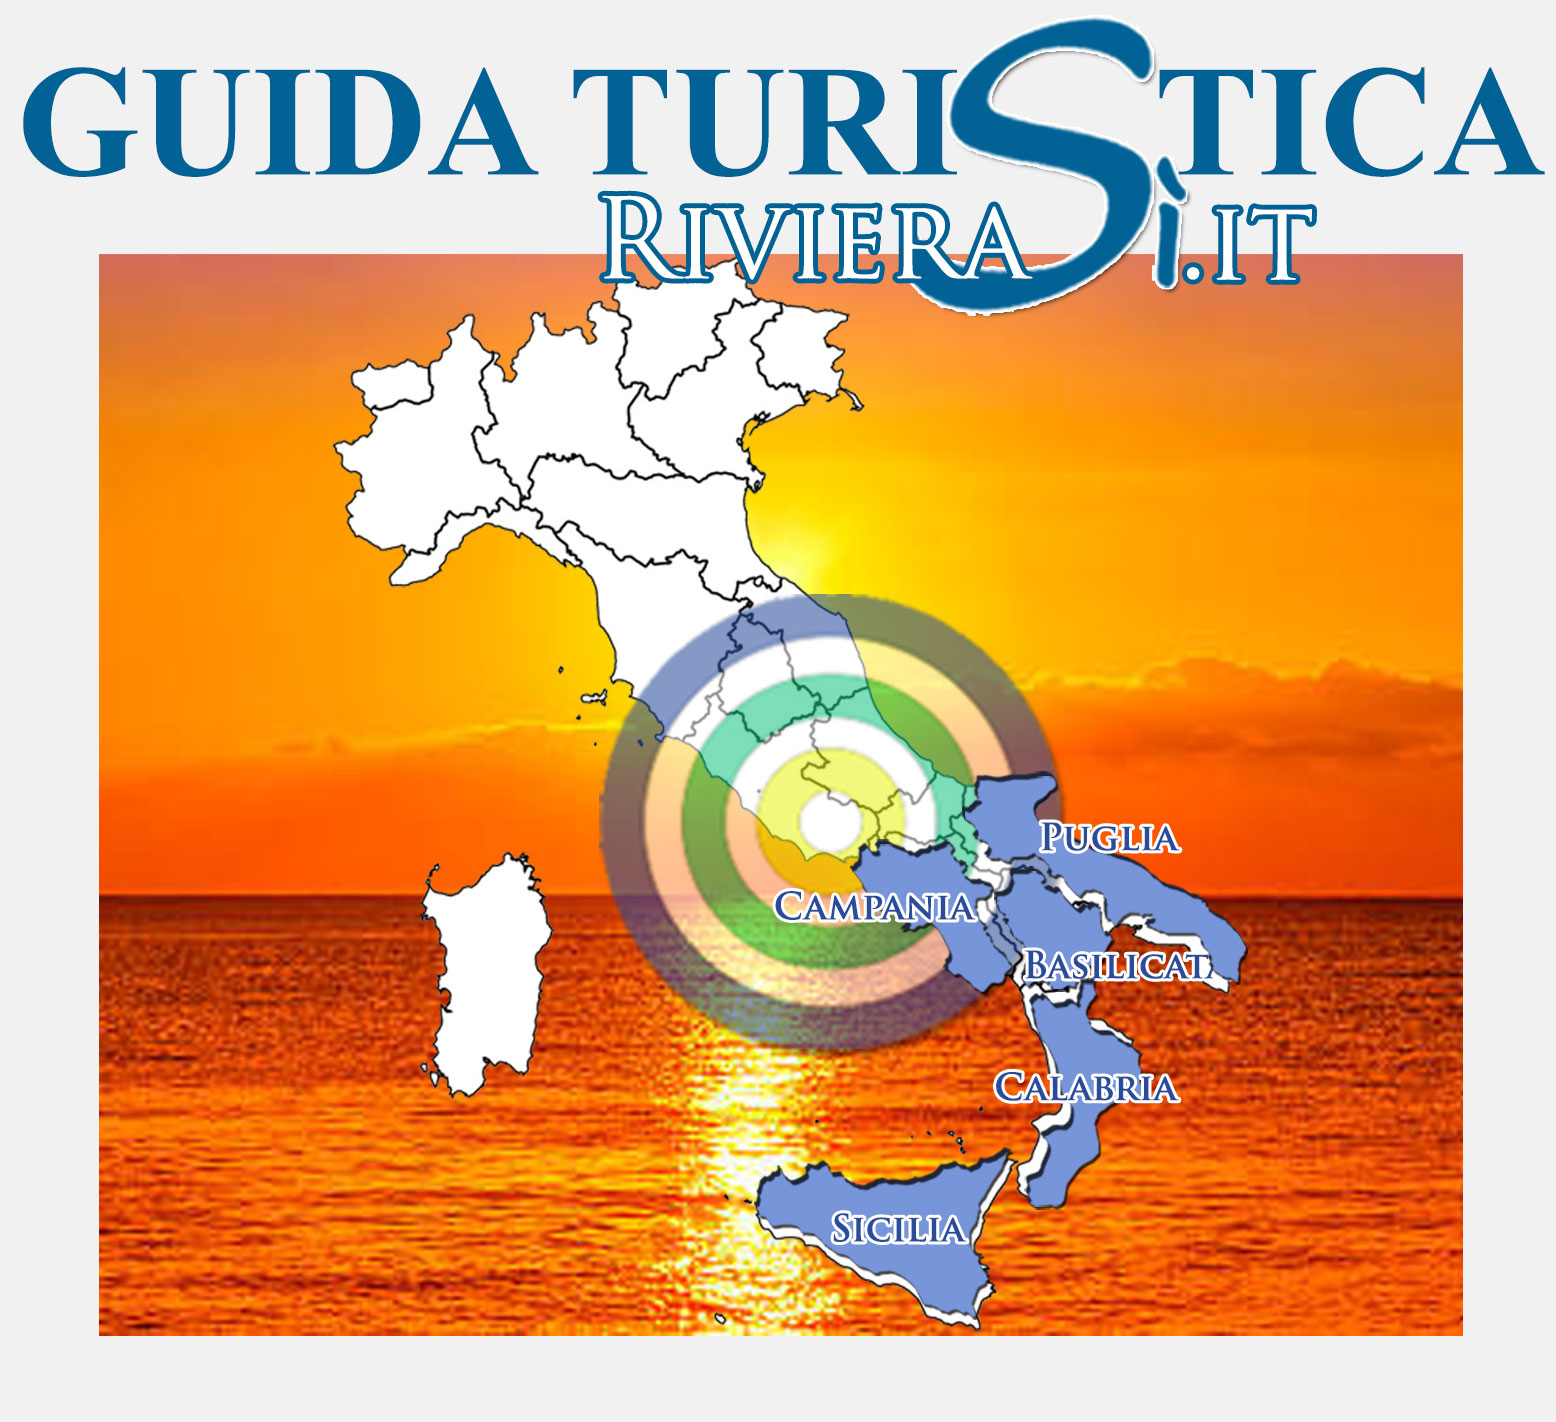 Guida turistica delle Riviere del Sud Italia e ... informati, naviga e visita il luoghi più conosciuti del Sud Italia così come quelli da scoprire o in altre destinazioni